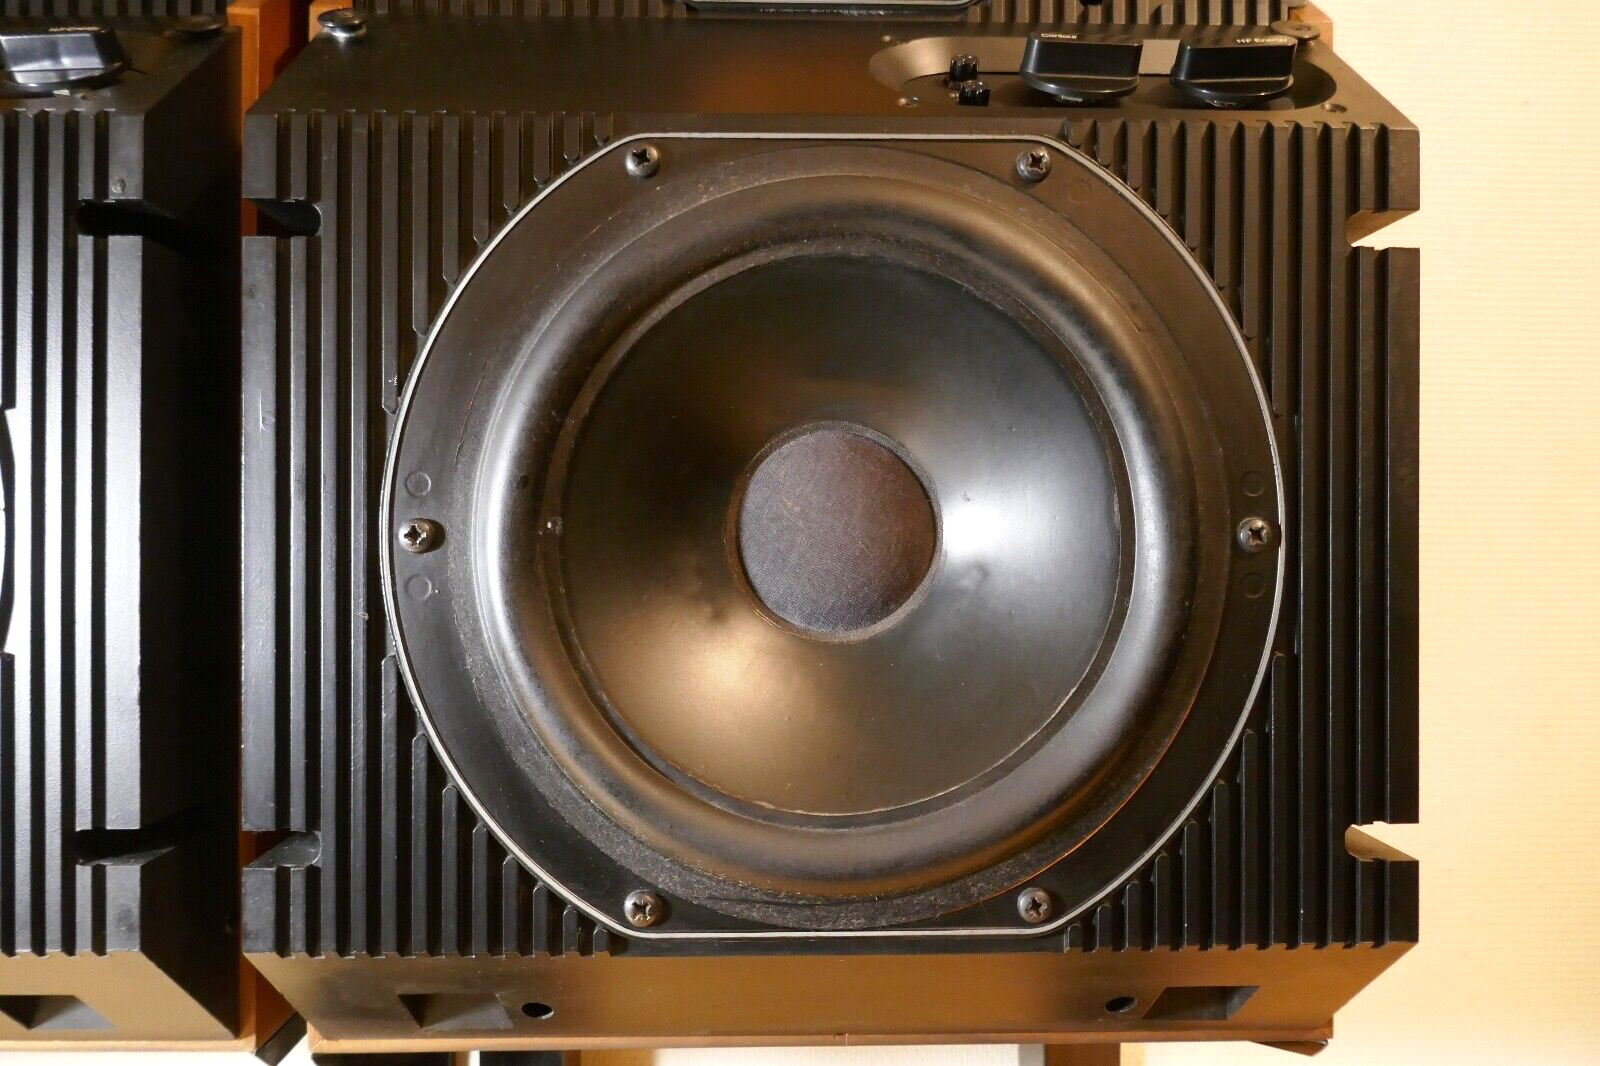 enceintes speakers Bower Wilkins DM 6 vintage occasion